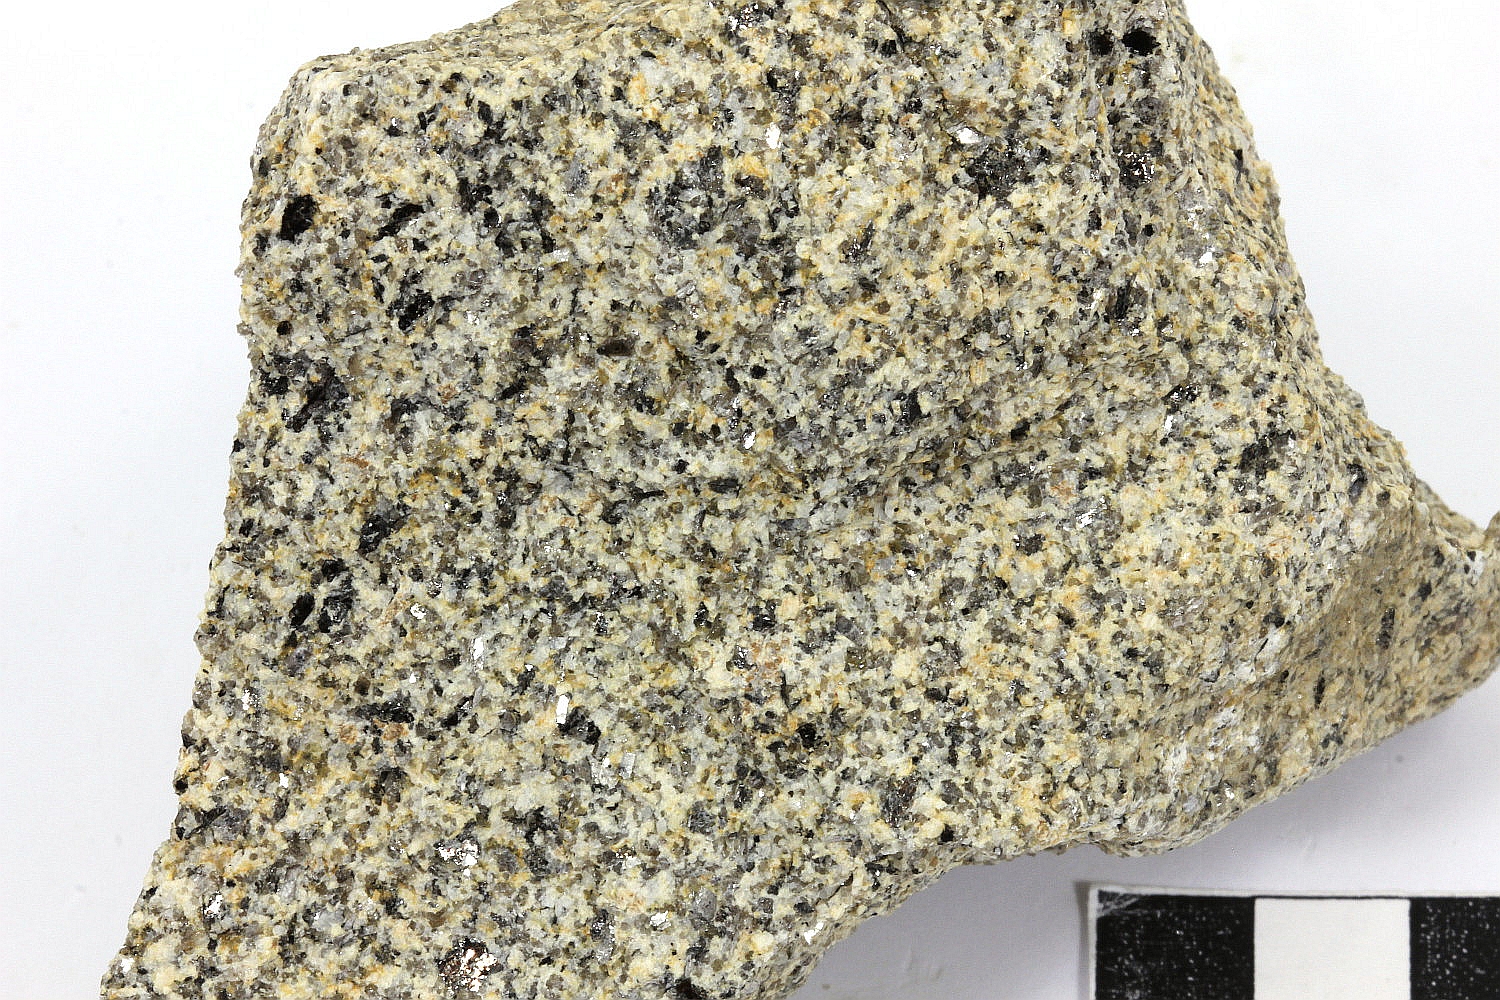 Granite fin à deux micas Leucogranite de Chateauponsac Massif central   Le Chézeau